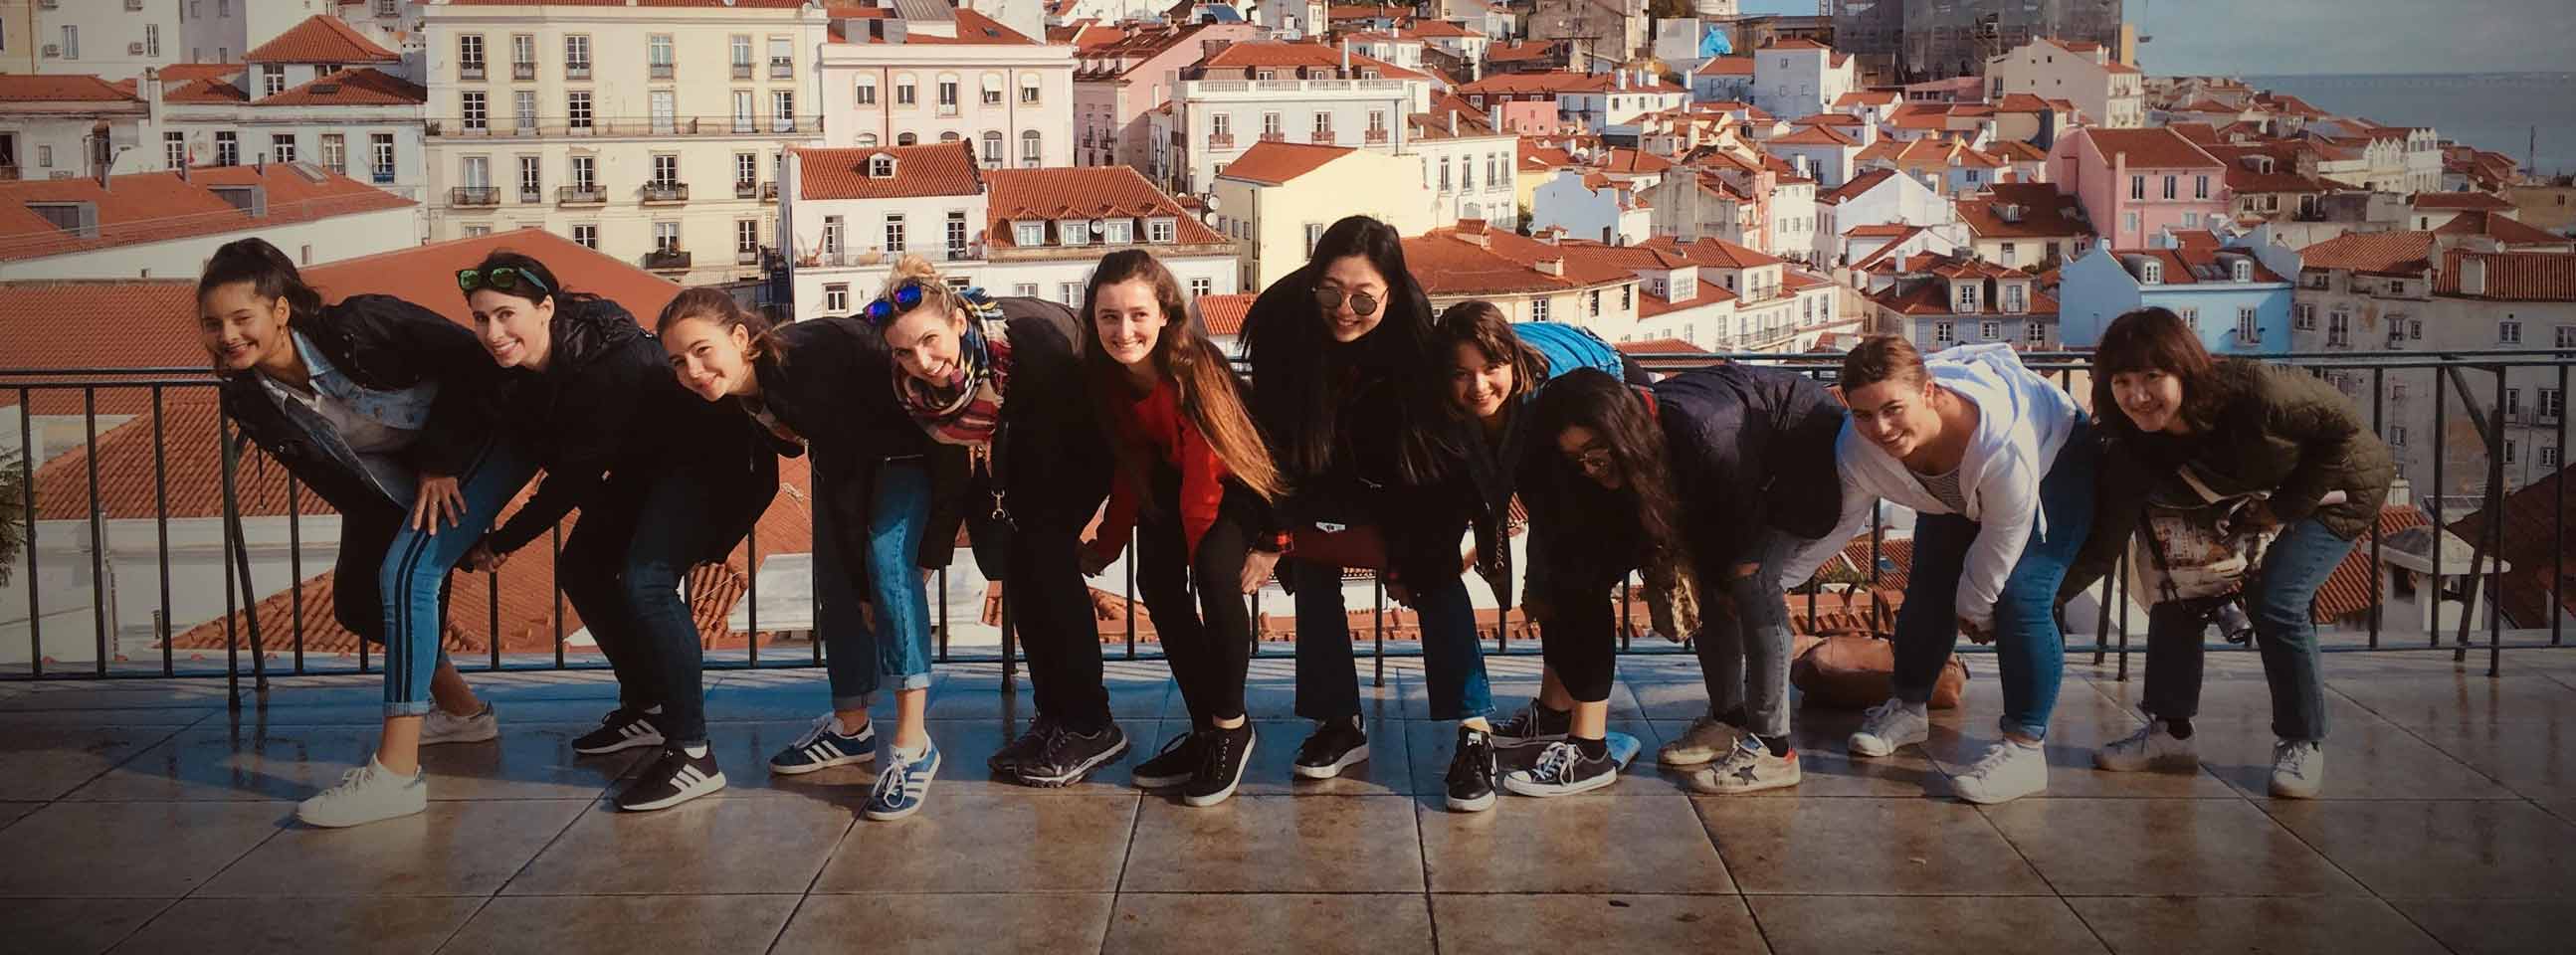 Groupe de jeunes de 12 à 17 ans en voyage en Europe lors de leur séjour de vacances du printemps